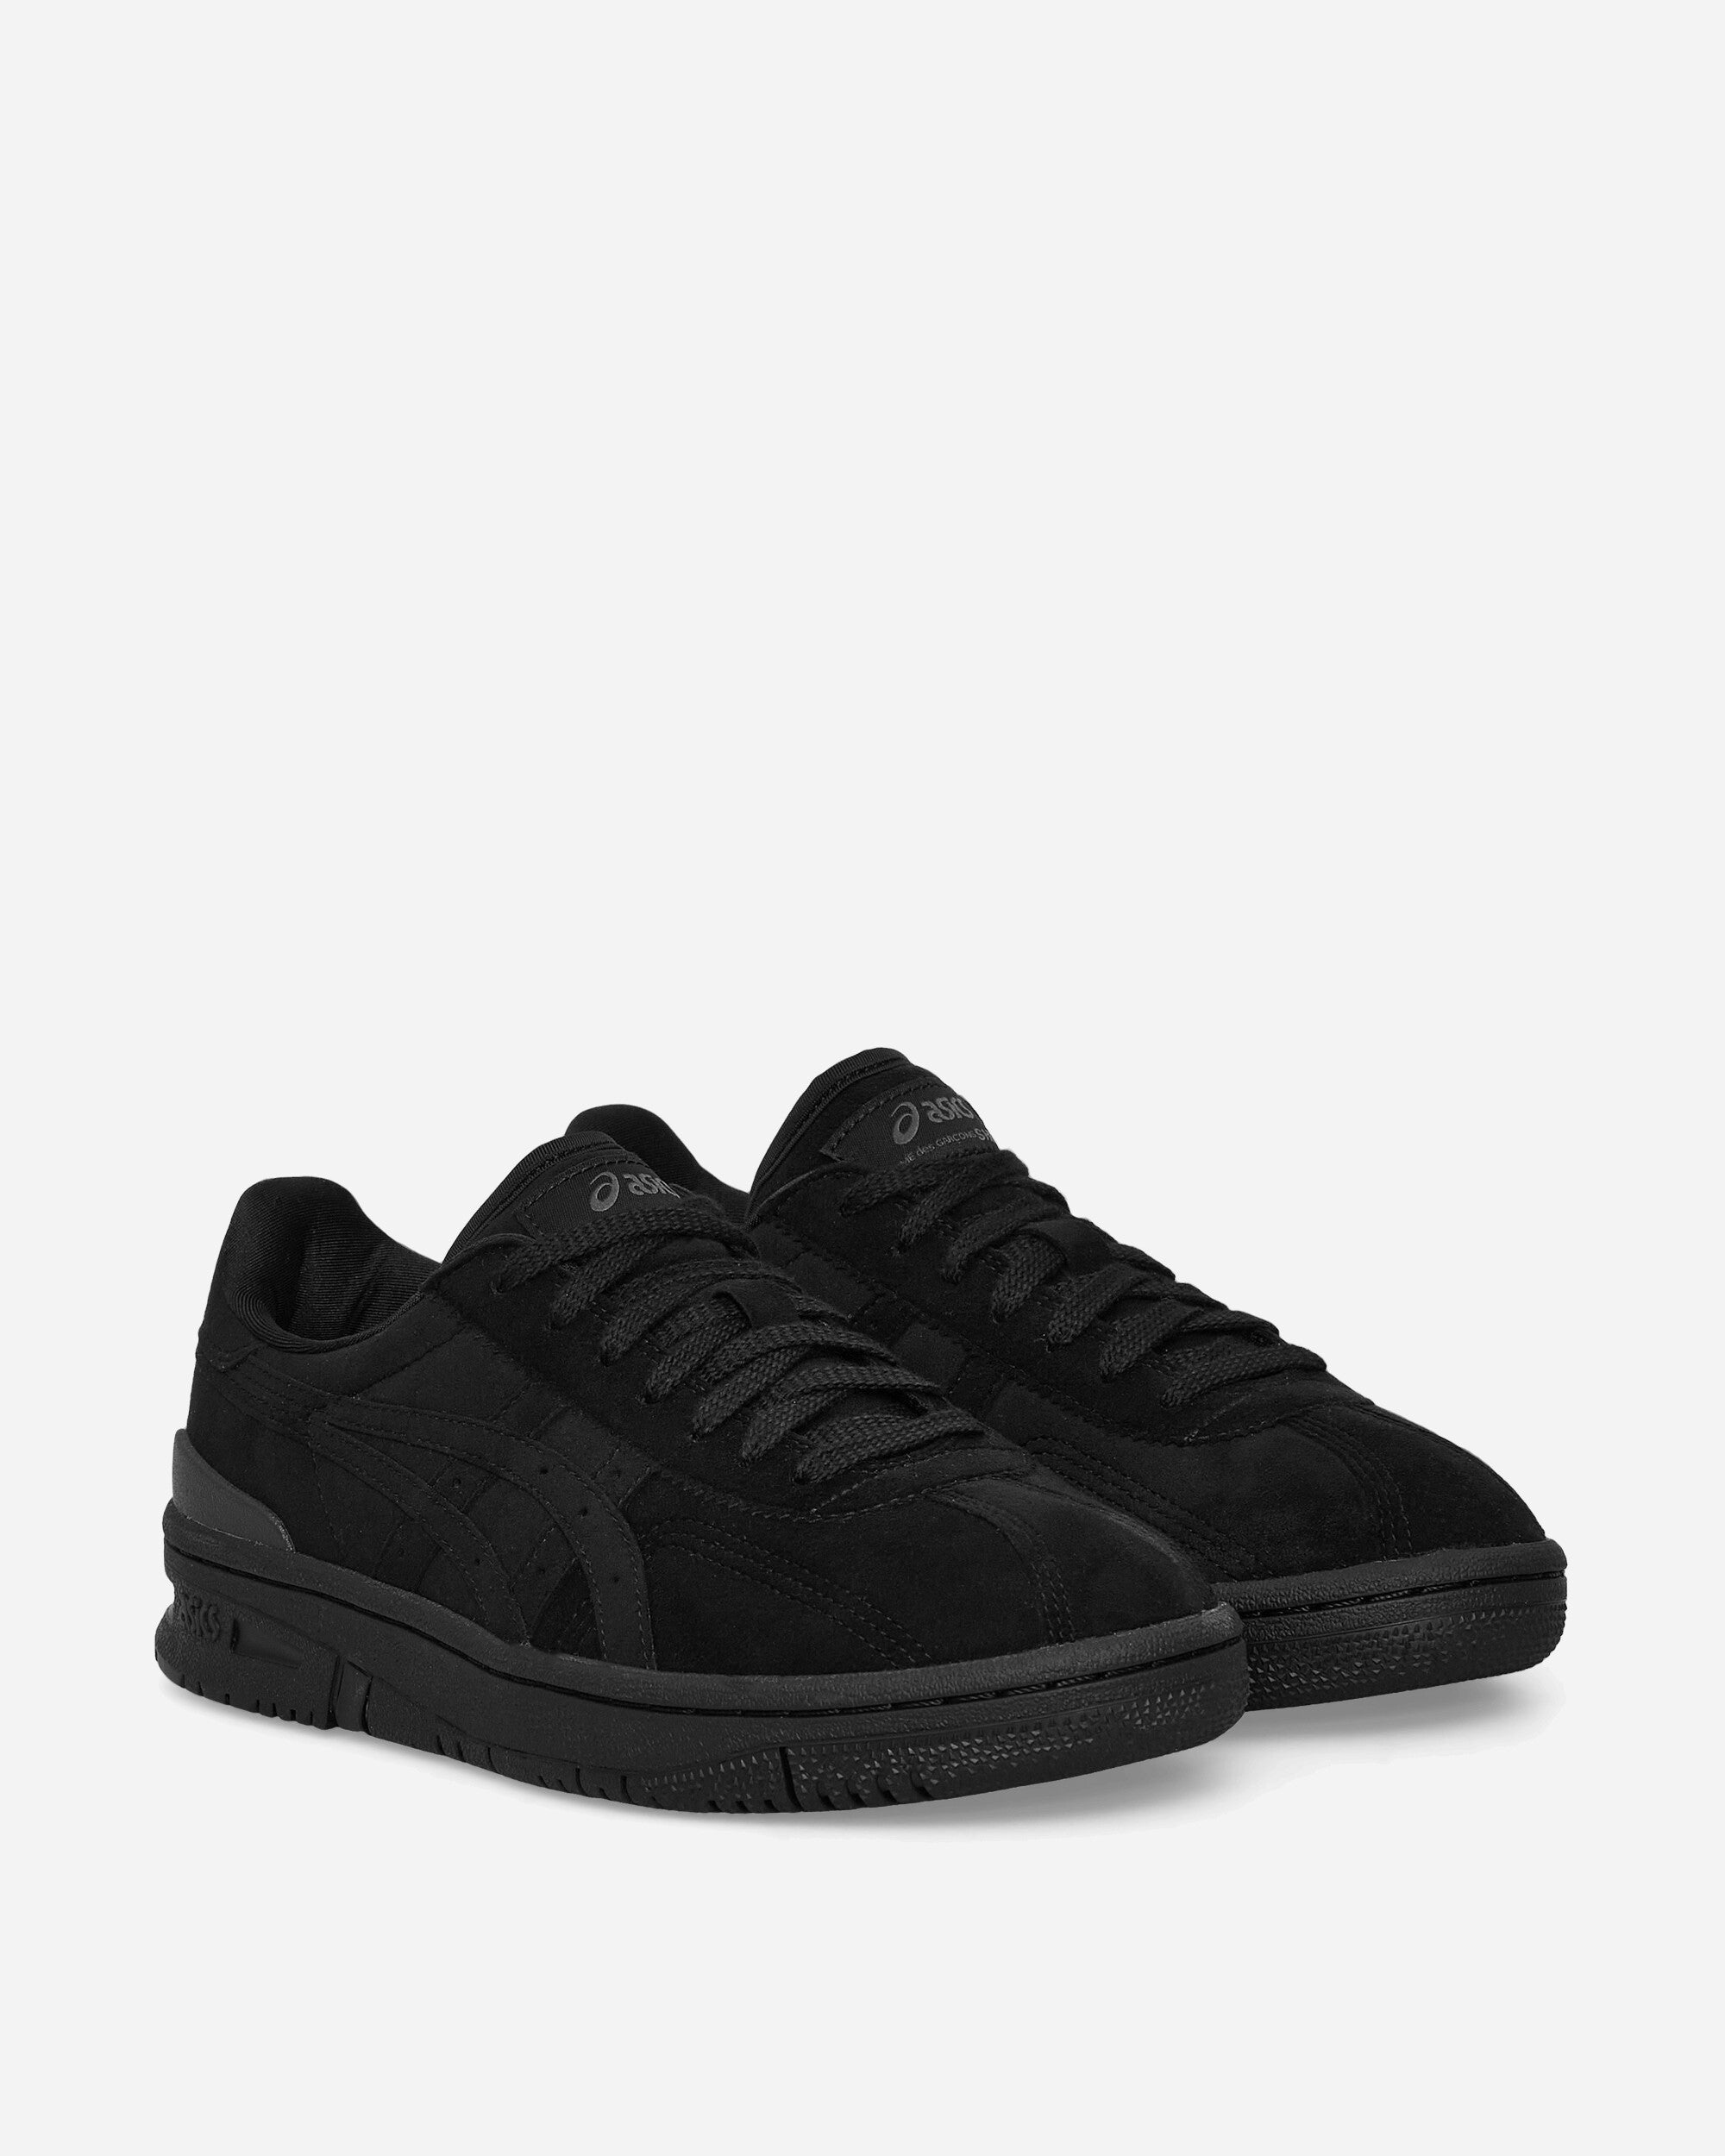 Comme Des Garçons Shirt Asics Sneakers Black Sneakers Low FK-K101-S23 1